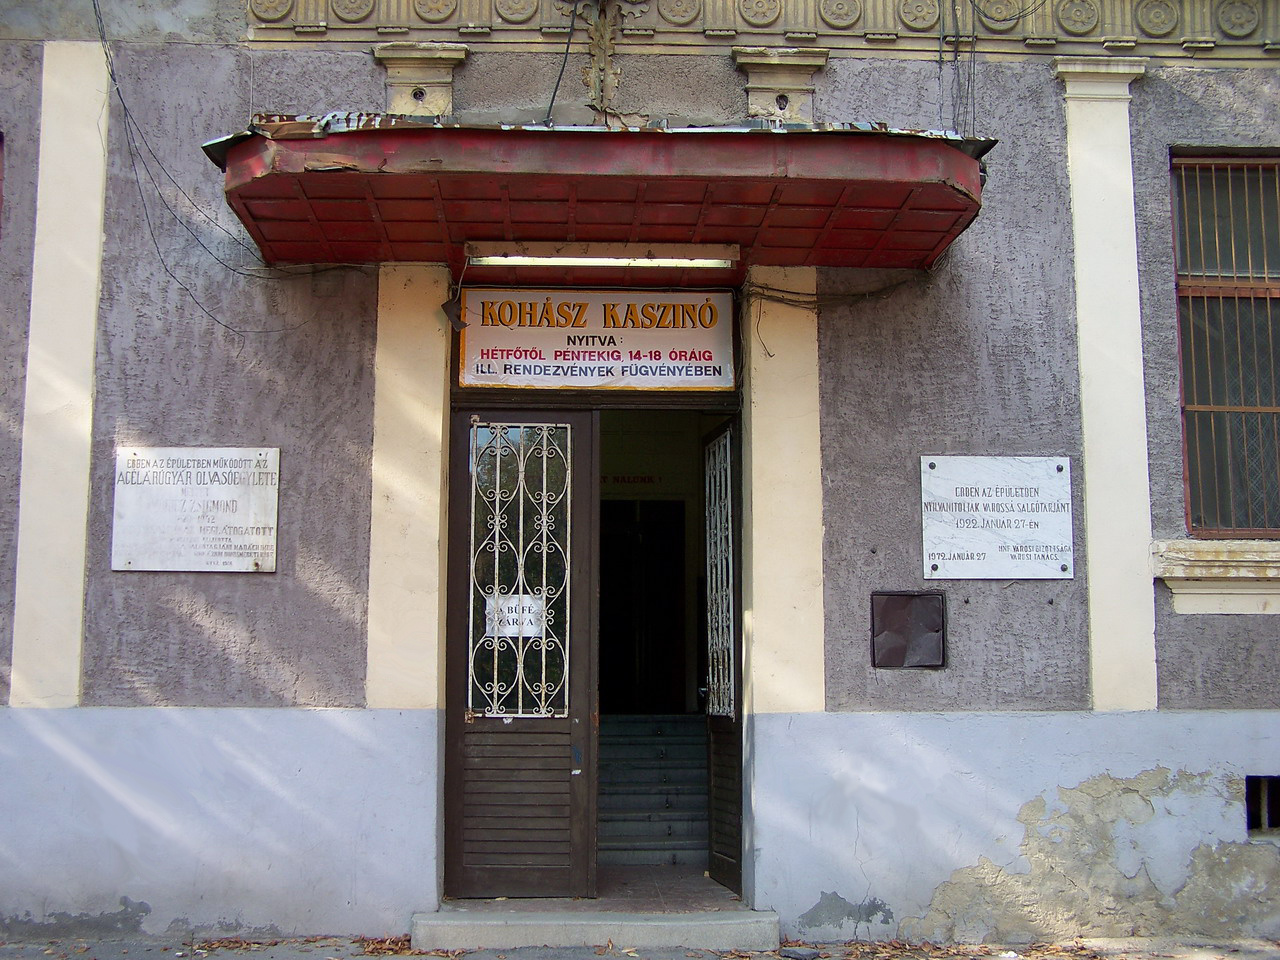 Salgótarjáni képek, a Kohász műv.ház egyik bejárata